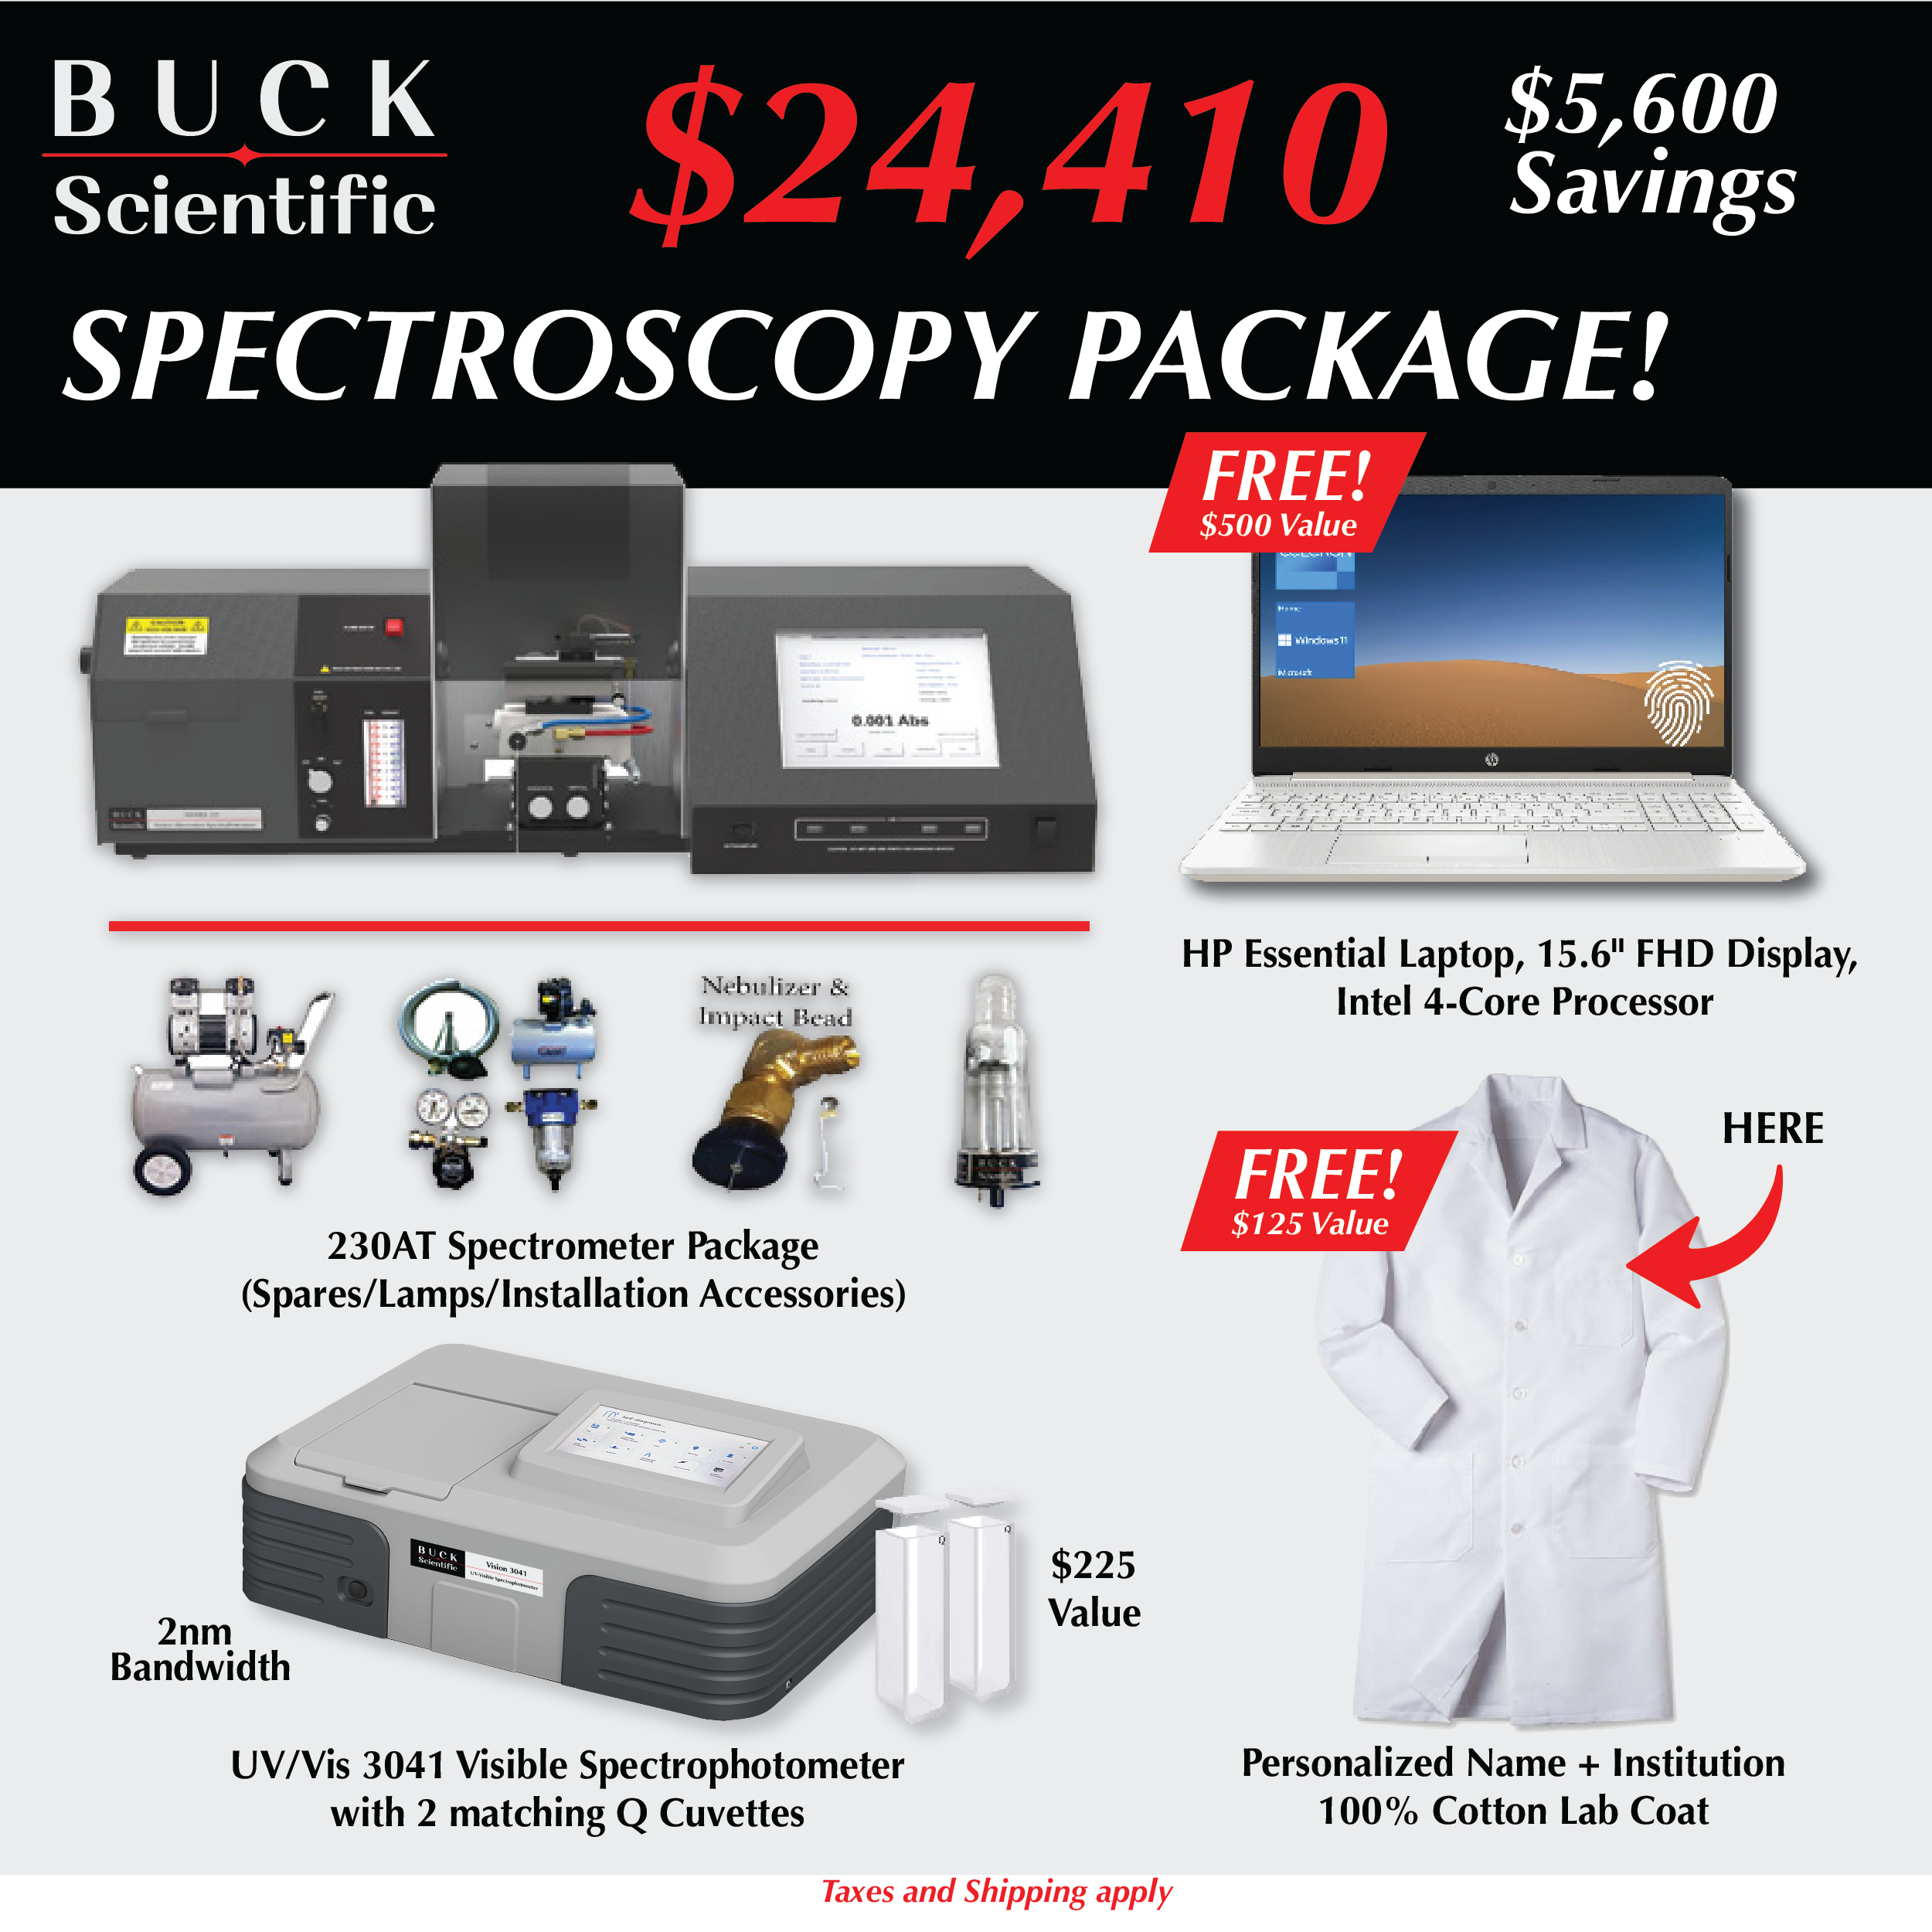 Spectroscopy Package